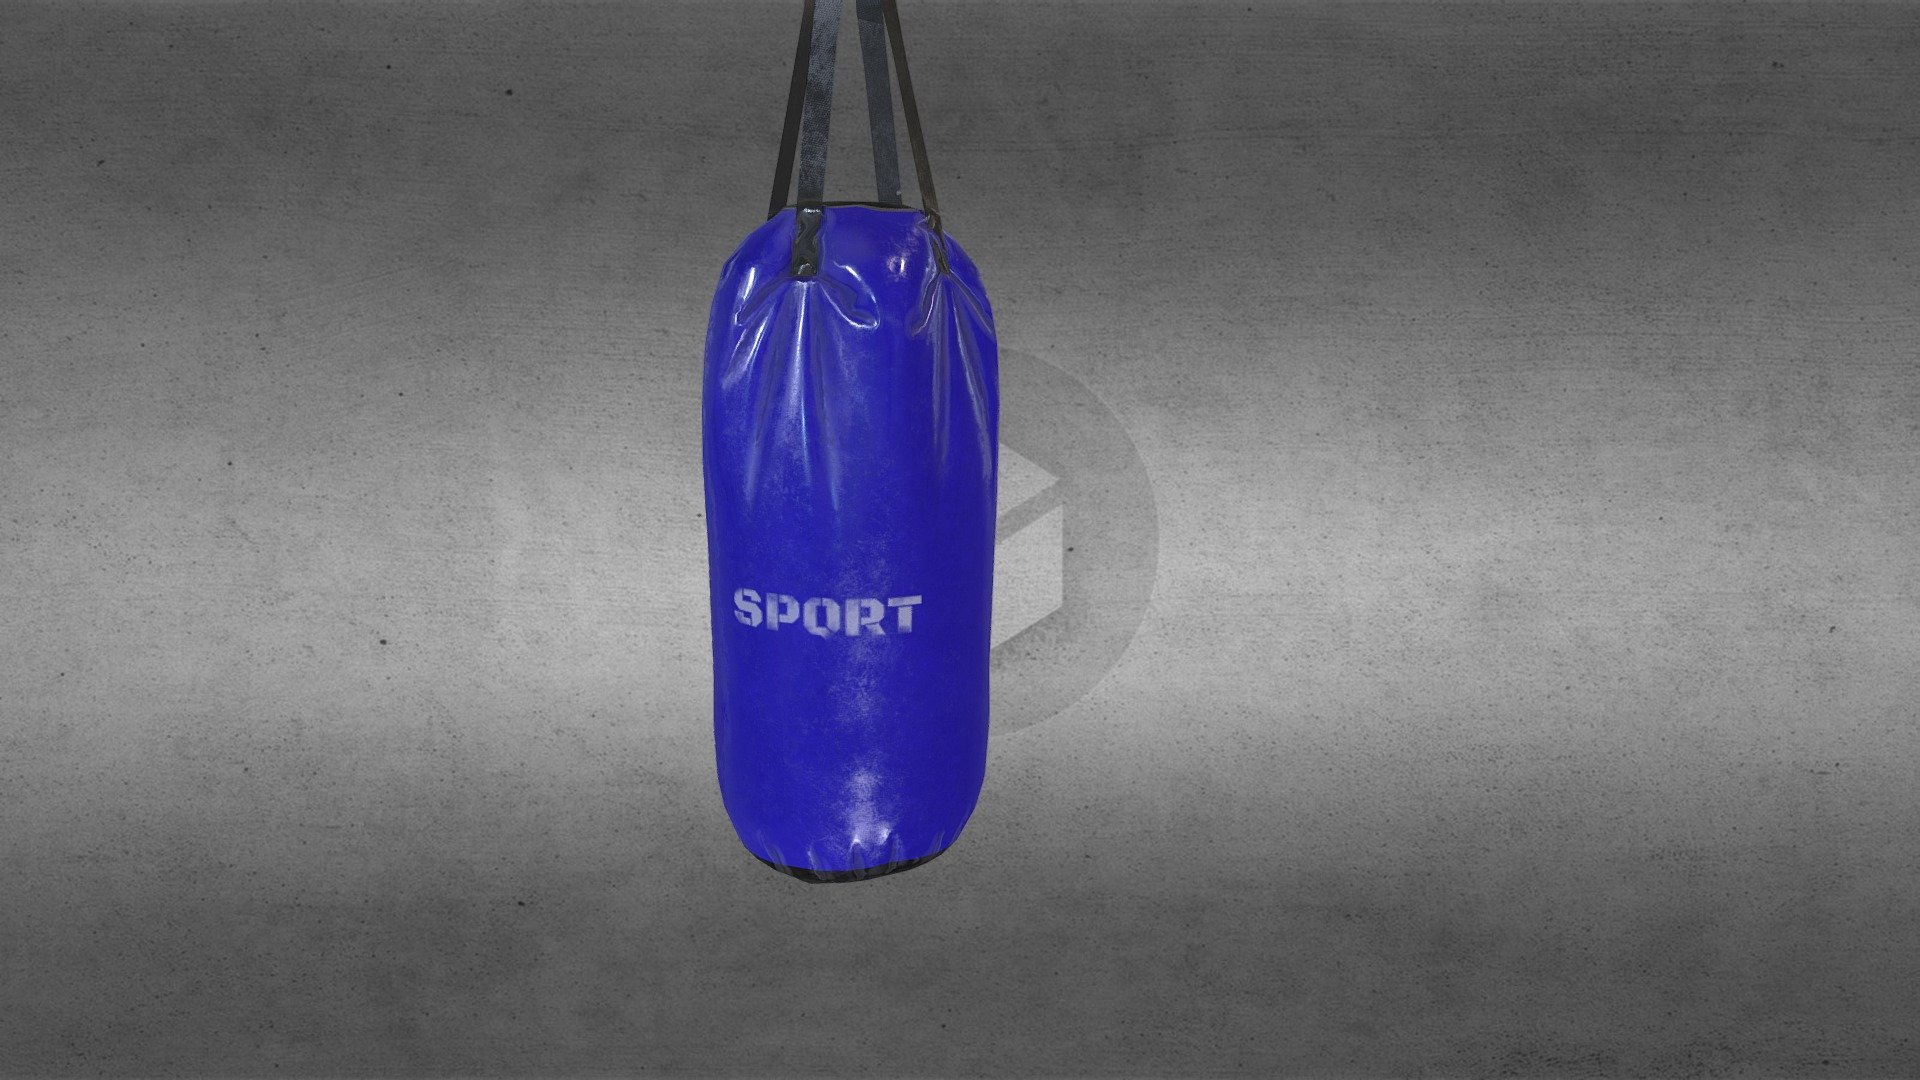 boxing bag , work in progres , marvelous designer bake test - boxing bag, test, work in progress - 3D model by Vladyslav M. (@klaster17) 3d model